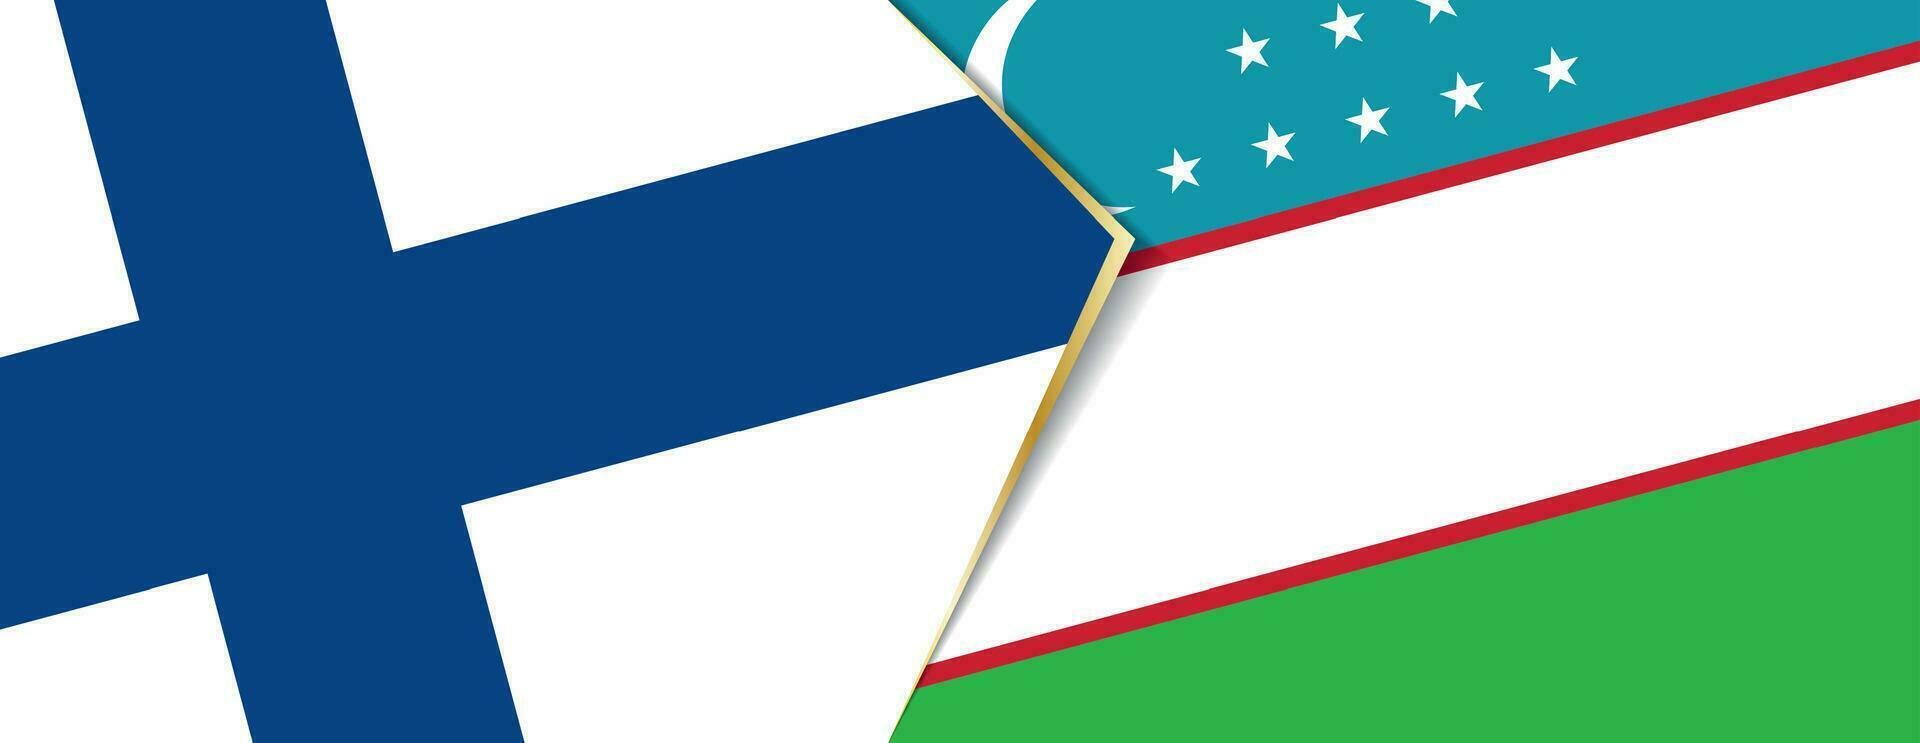 Finlandia e Uzbekistan bandiere, Due vettore bandiere.